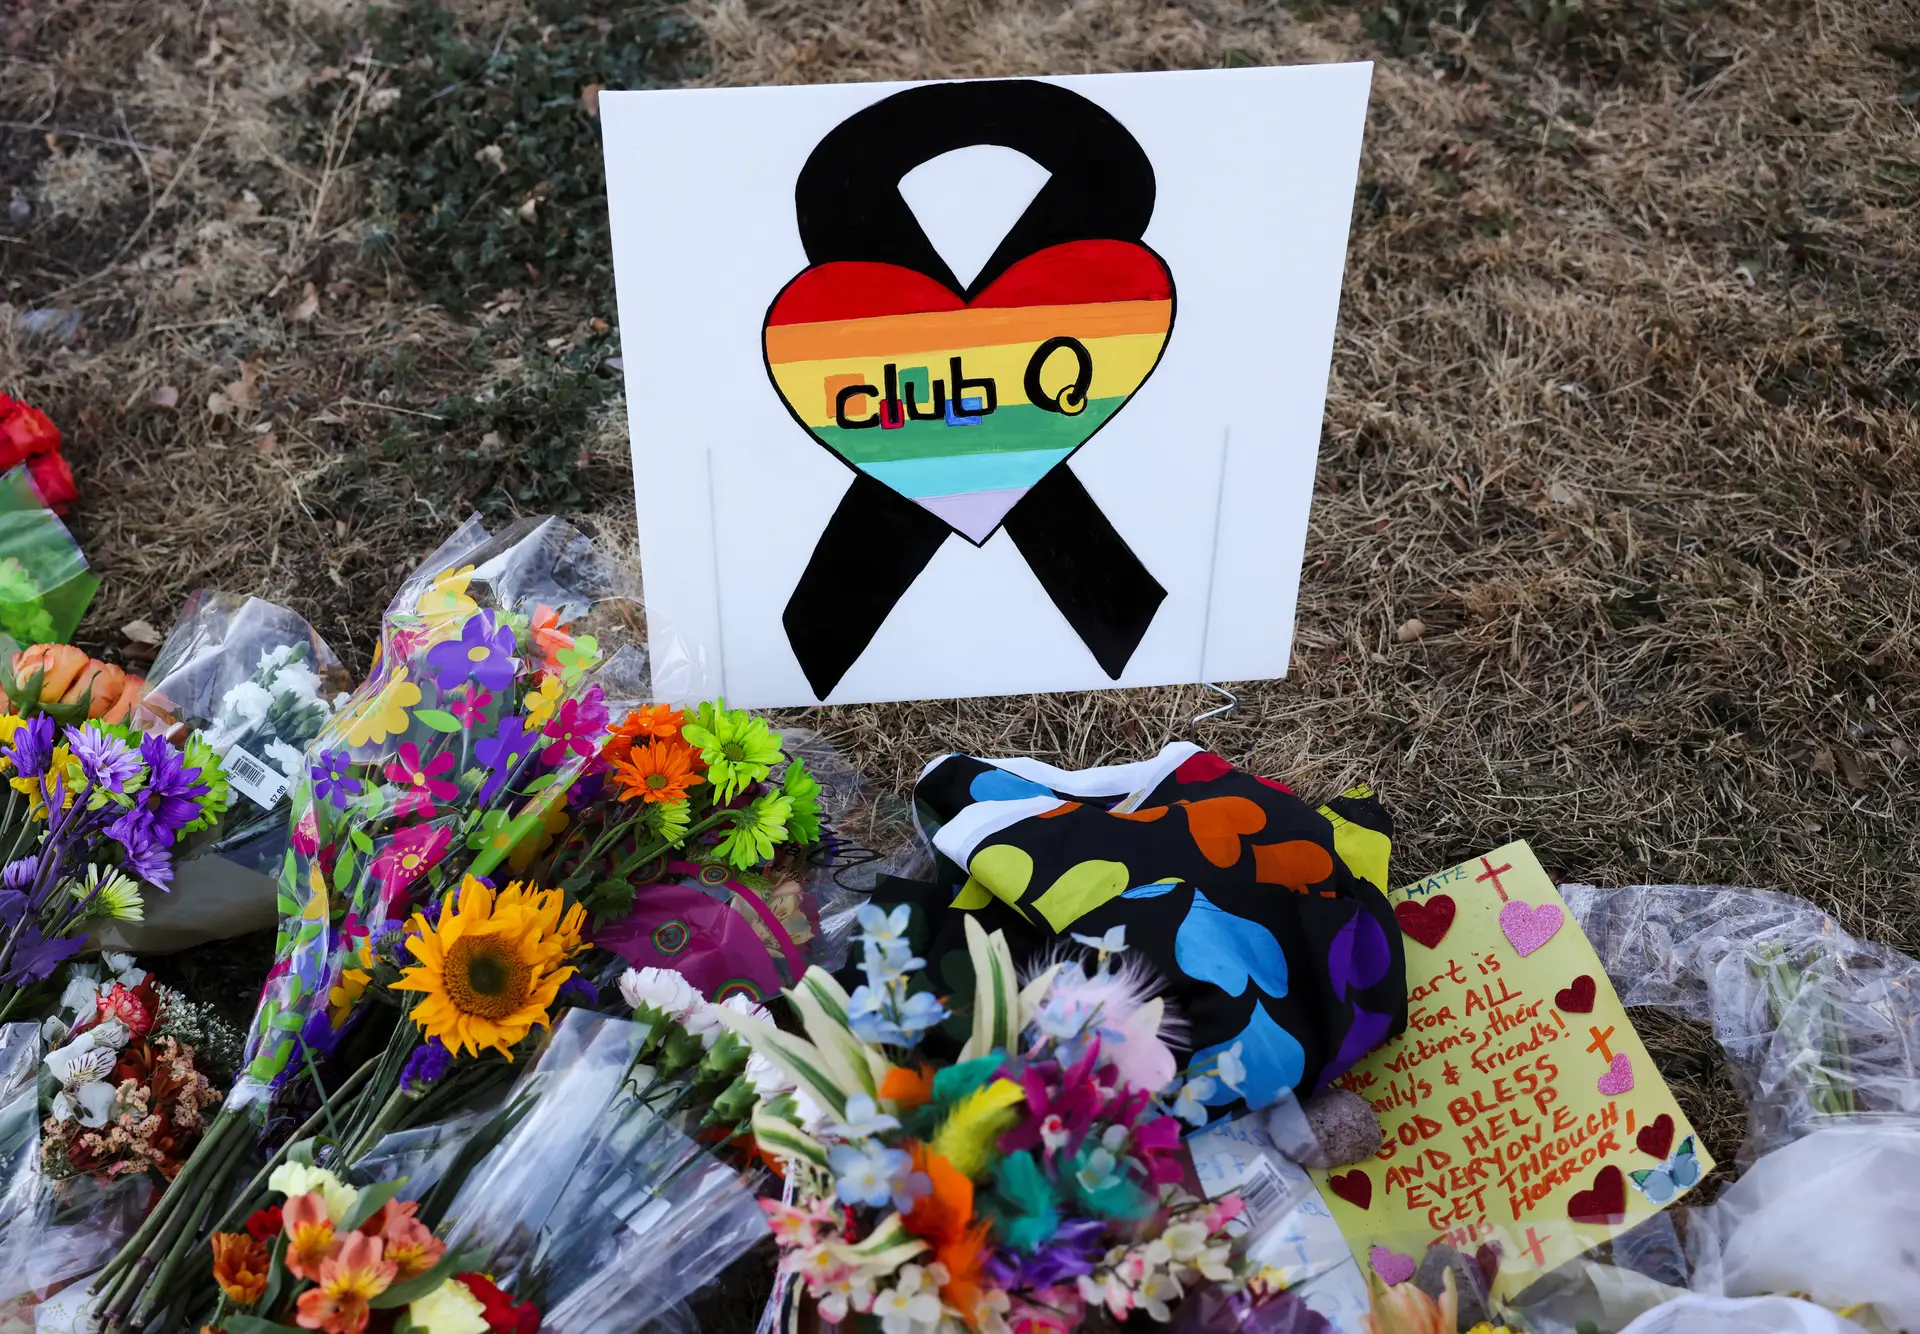 Suspeito de massacre em bar 'gay' nos EUA foi acusado de crime de ódio